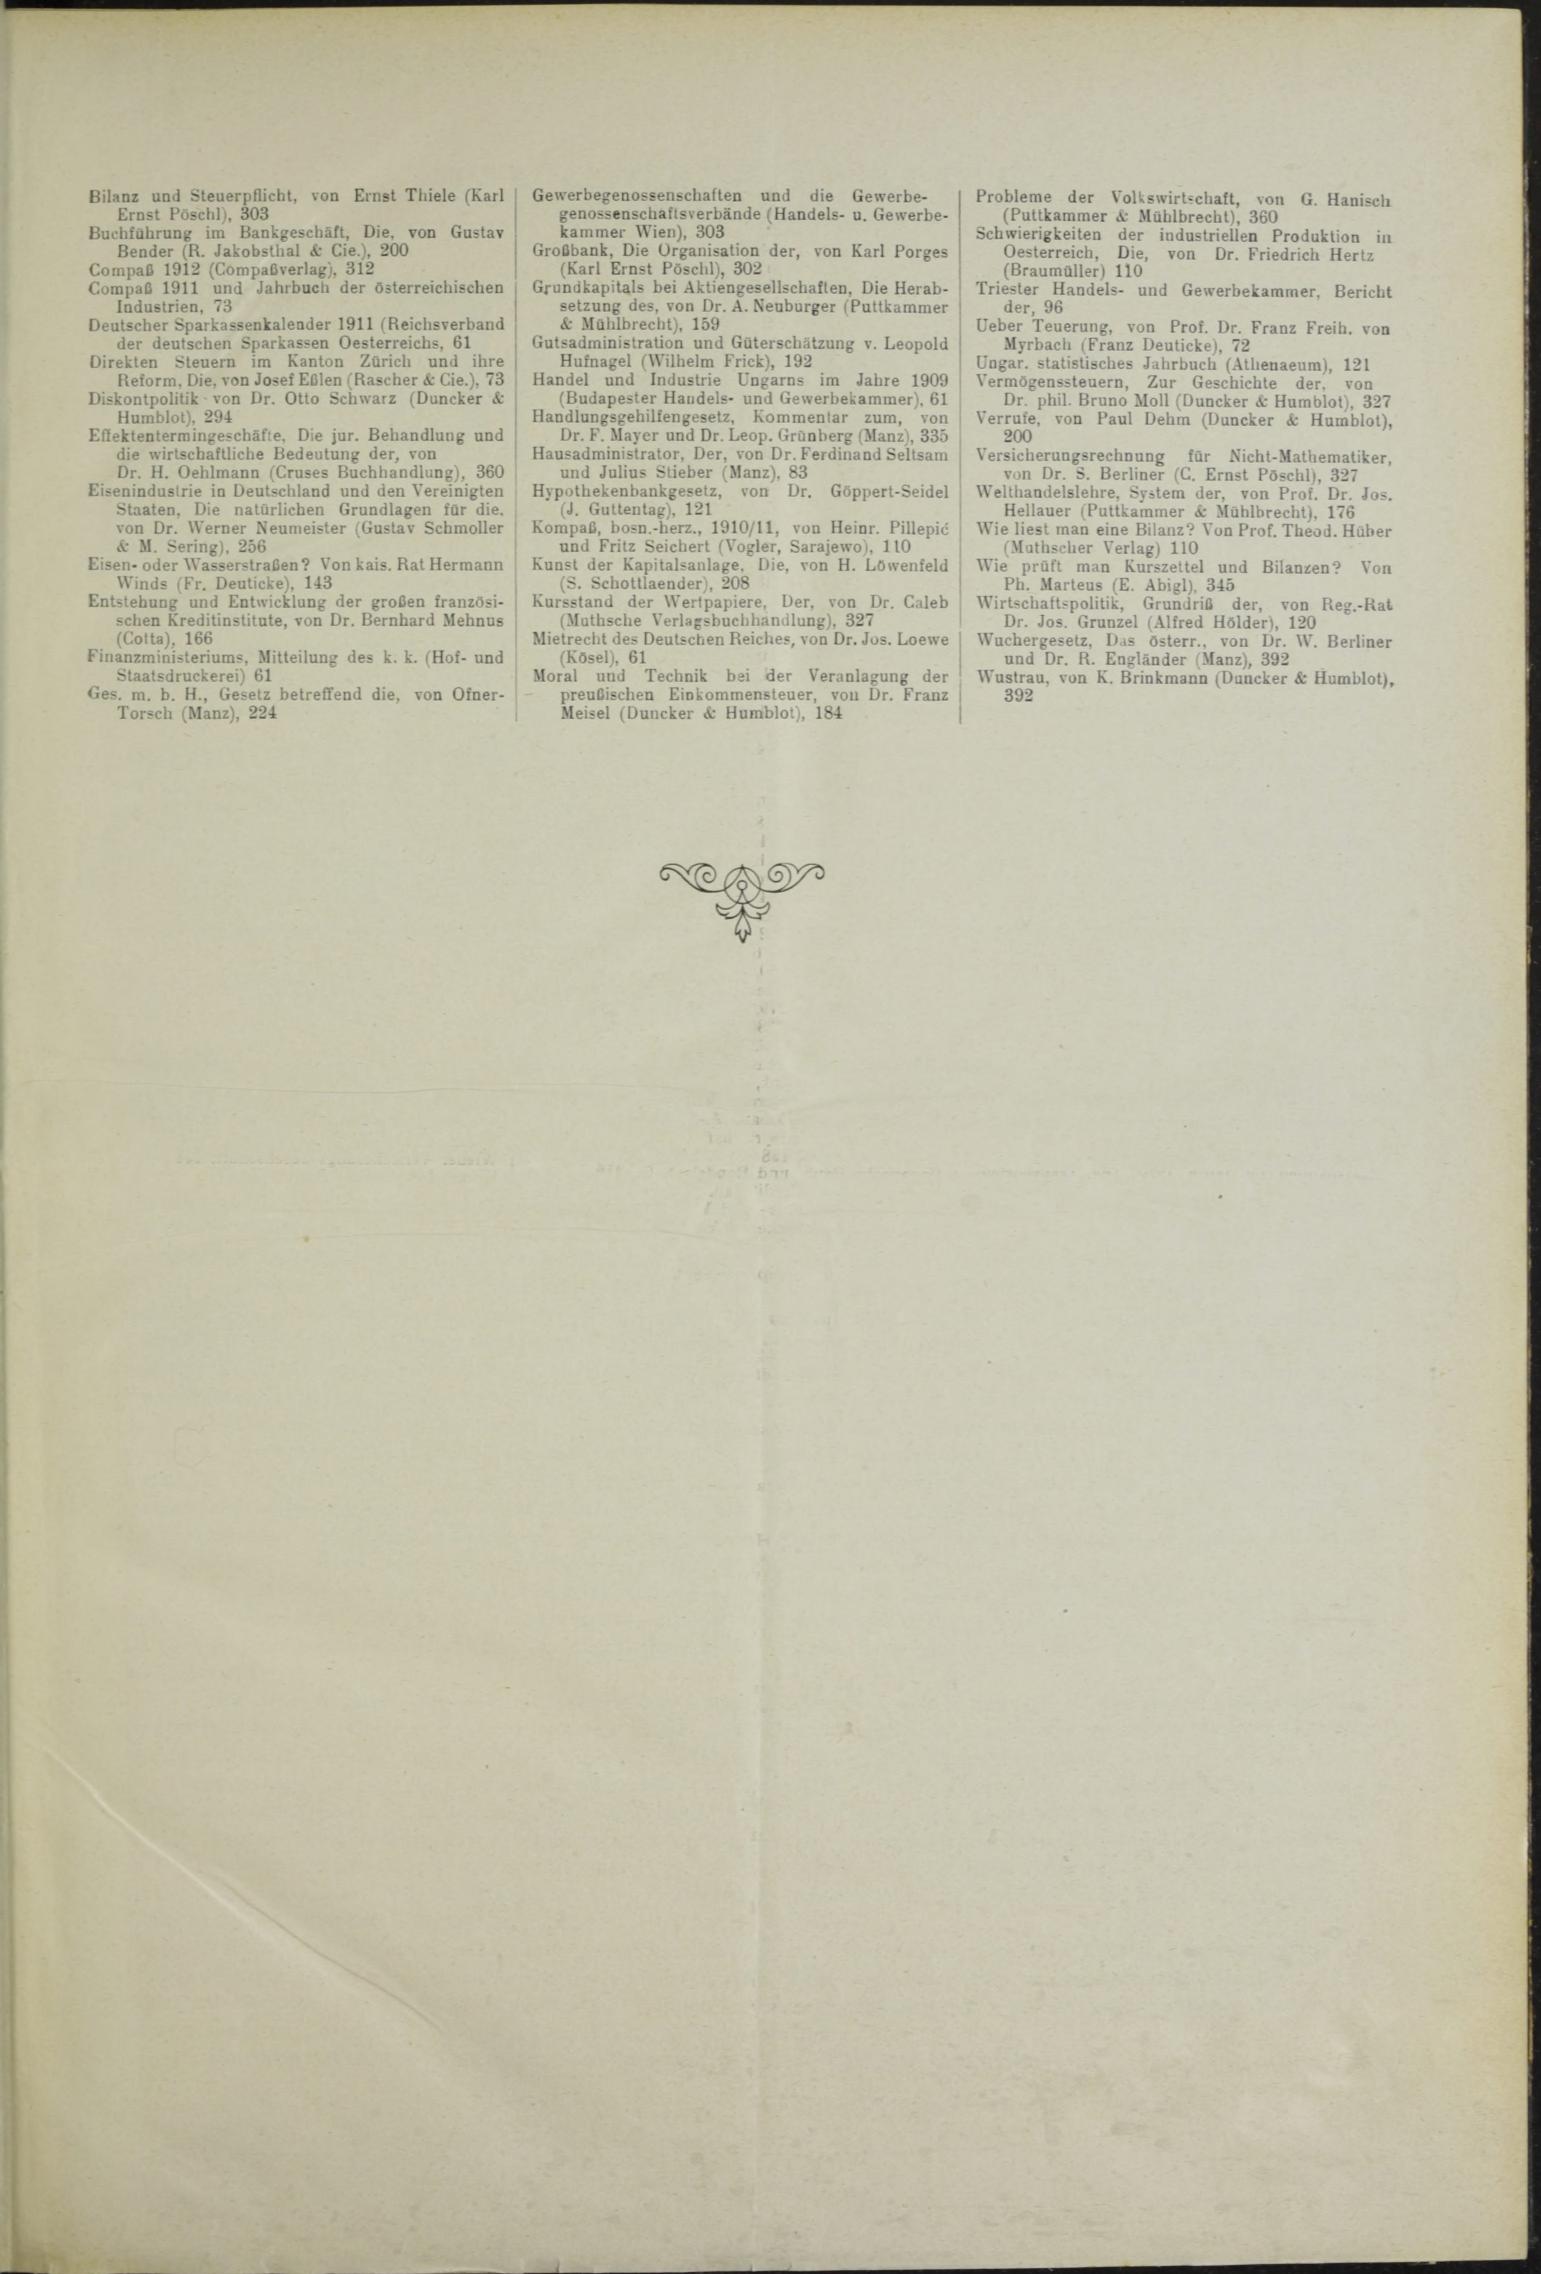 Der Tresor 23.09.1911 - Seite 11